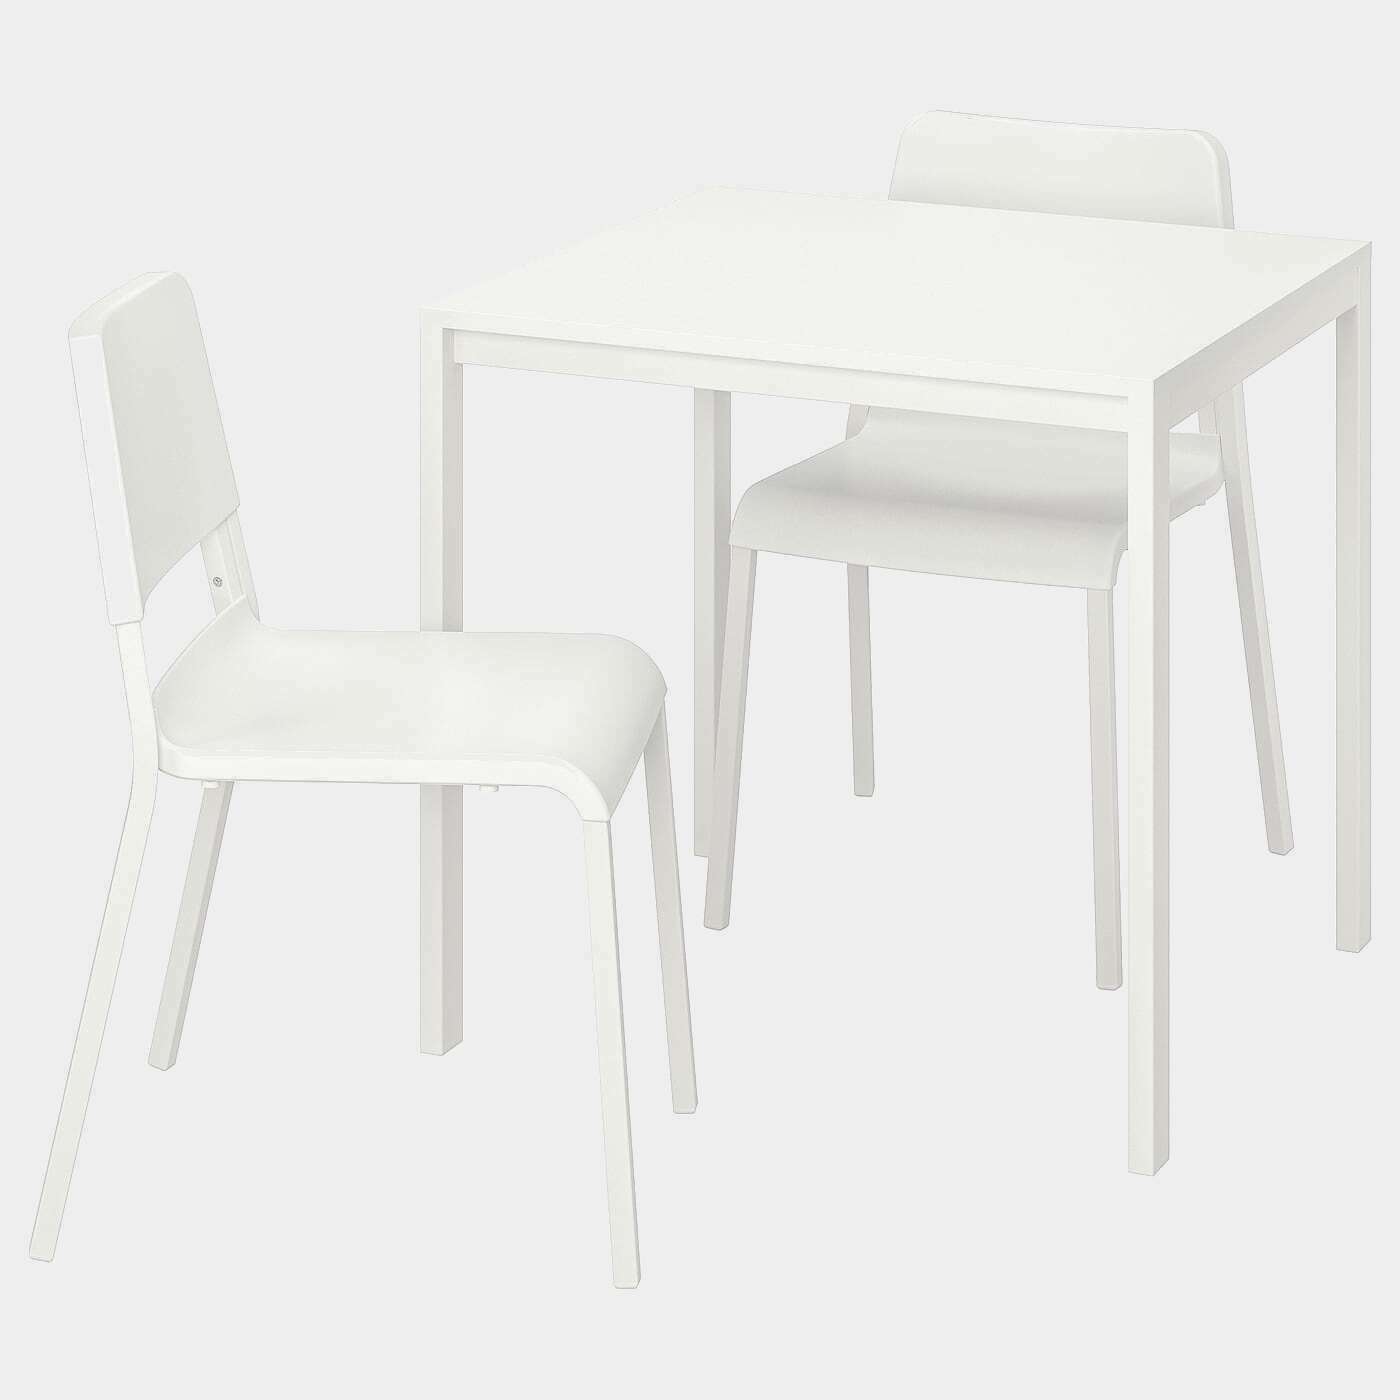 MELLTORP / TEODORES Tisch und 2 Stühle  - Essplatzgruppe - Möbel Ideen für dein Zuhause von Home Trends. Möbel Trends von Social Media Influencer für dein Skandi Zuhause.